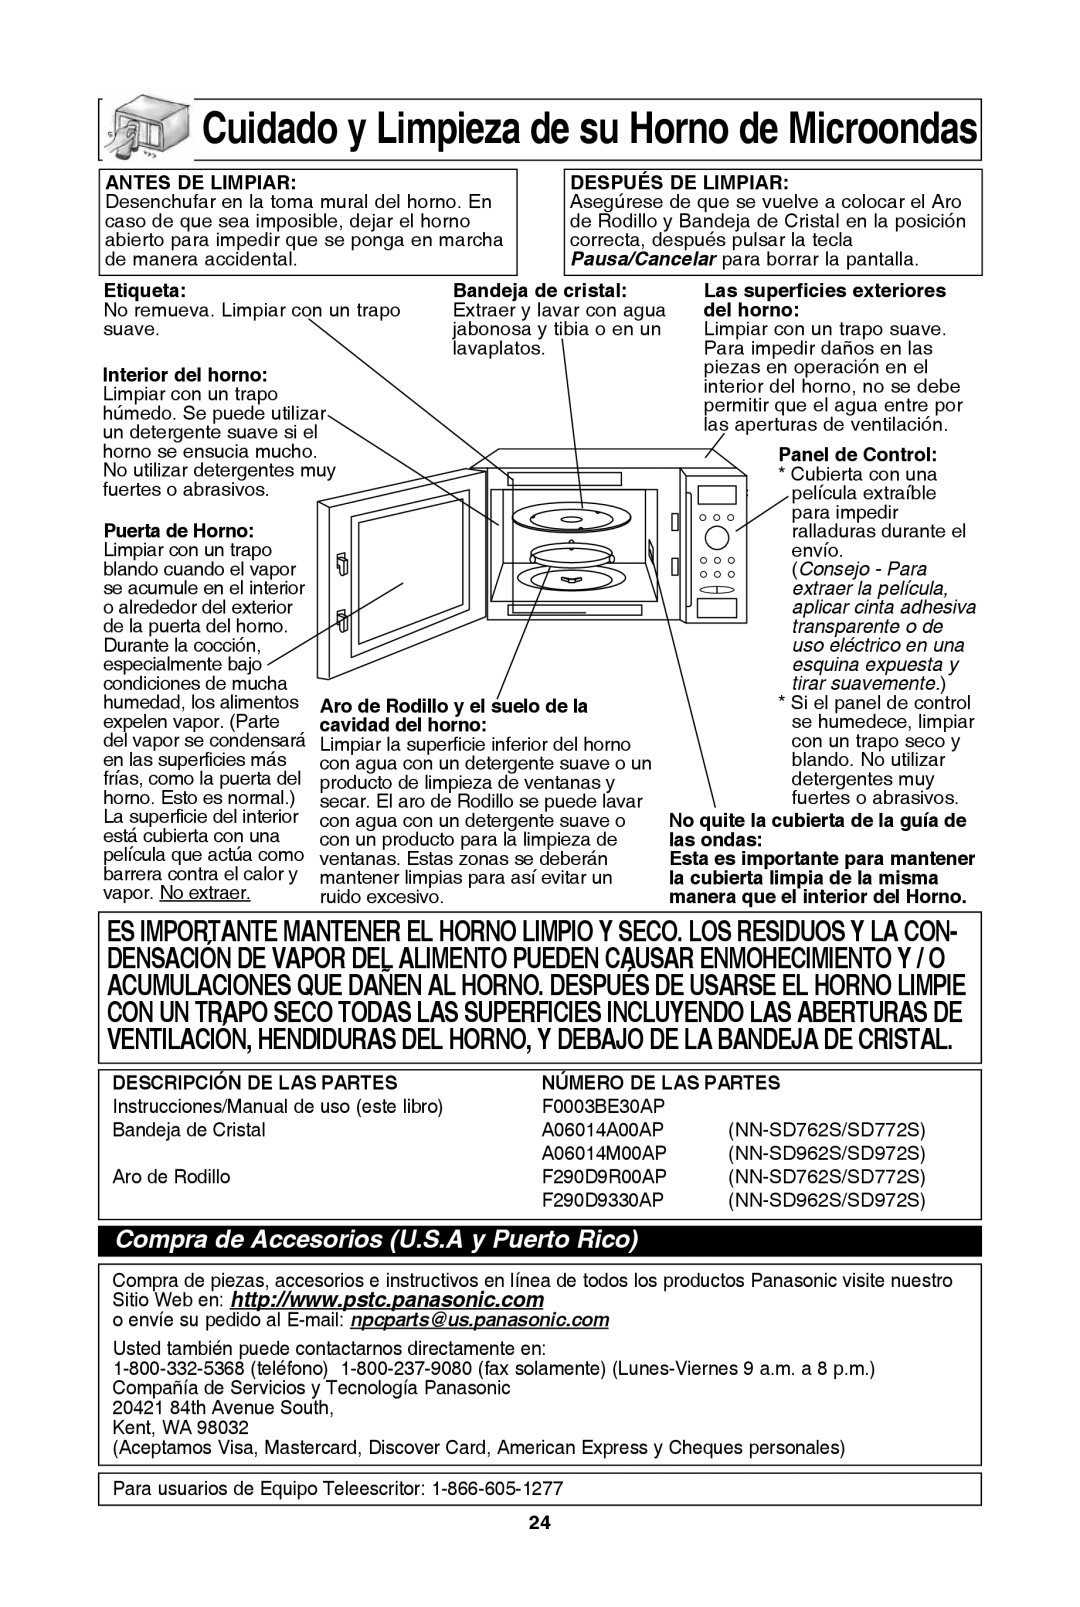 Panasonic NN-SD962S cuidado y limpieza de su horno de Microondas, Compra de Accesorios U.S.A y Puerto rico, Consejo - Para 